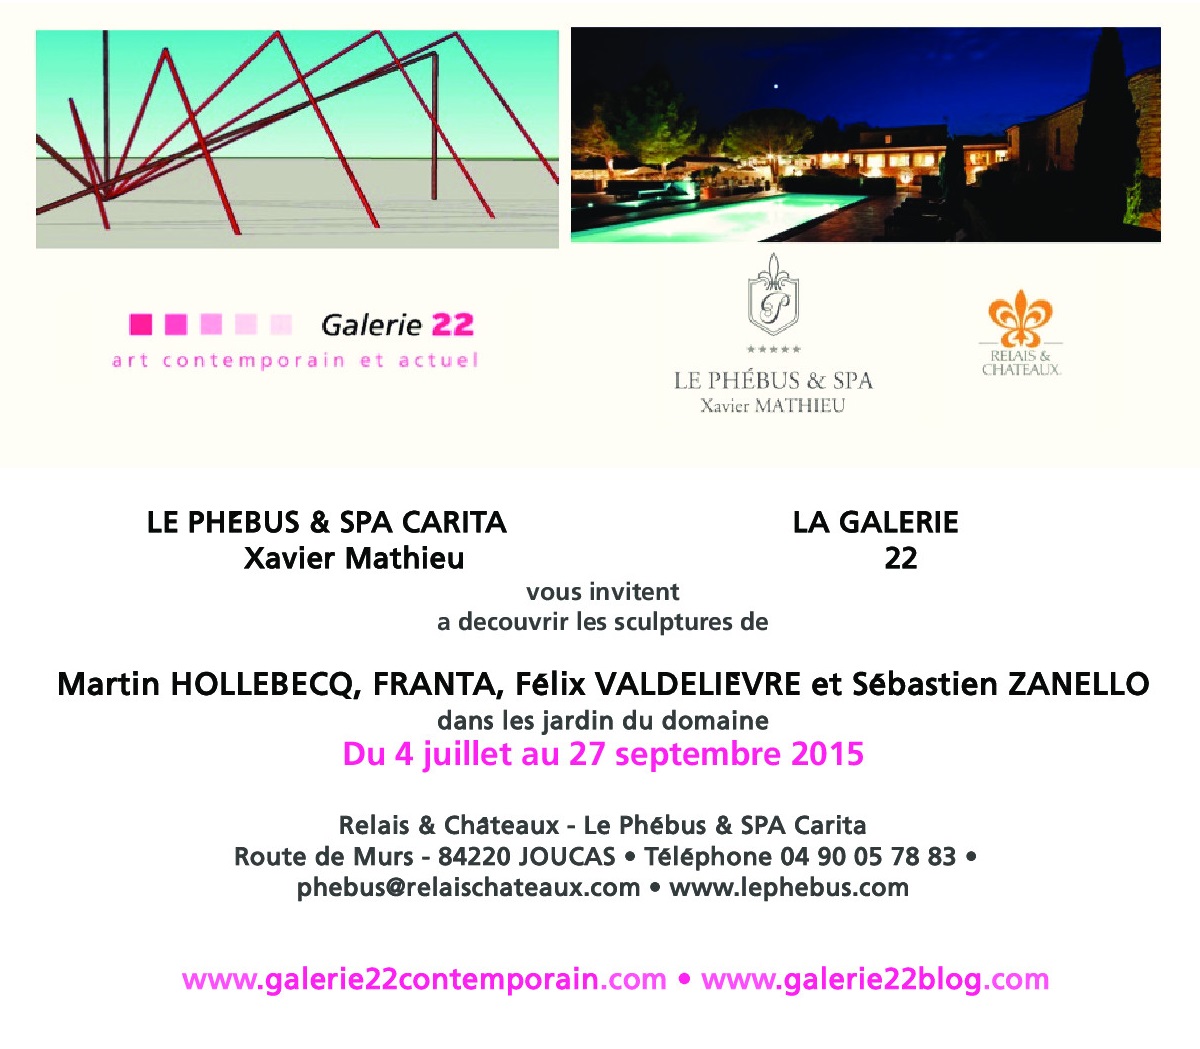 Affiche d'exposition : La Galerie 22 et l'hôtel Le Phébus exposent les sculptures de Martin Hollebecq, Franta, Félix Valdelièvre et Sébastien Zanello